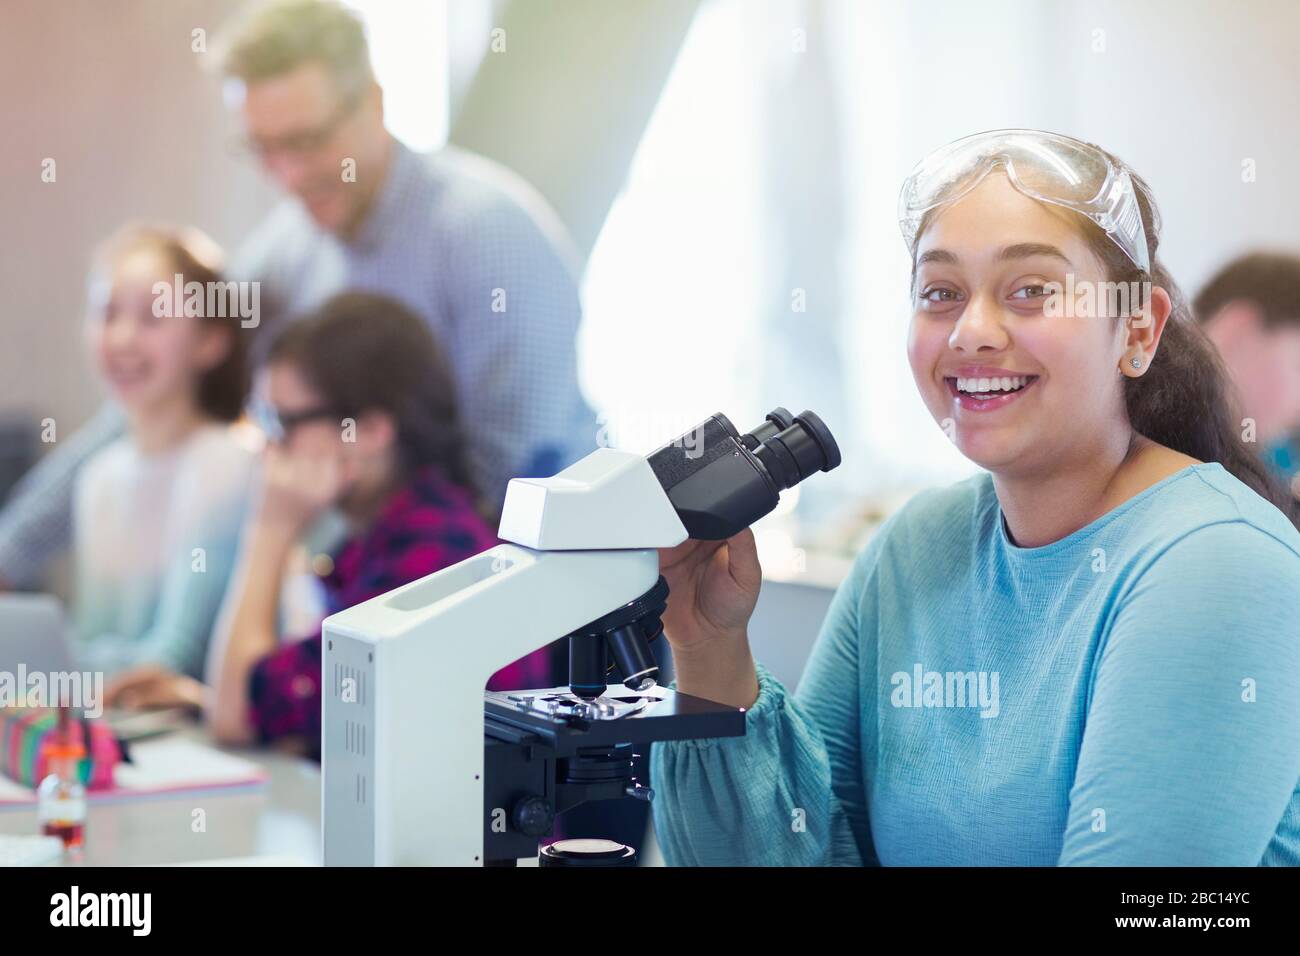 Portrait lächelnde, selbstbewusste Studentin des Mädchens, die wissenschaftliche Experimente am Mikroskop im Laborraum durchführt Stockfoto